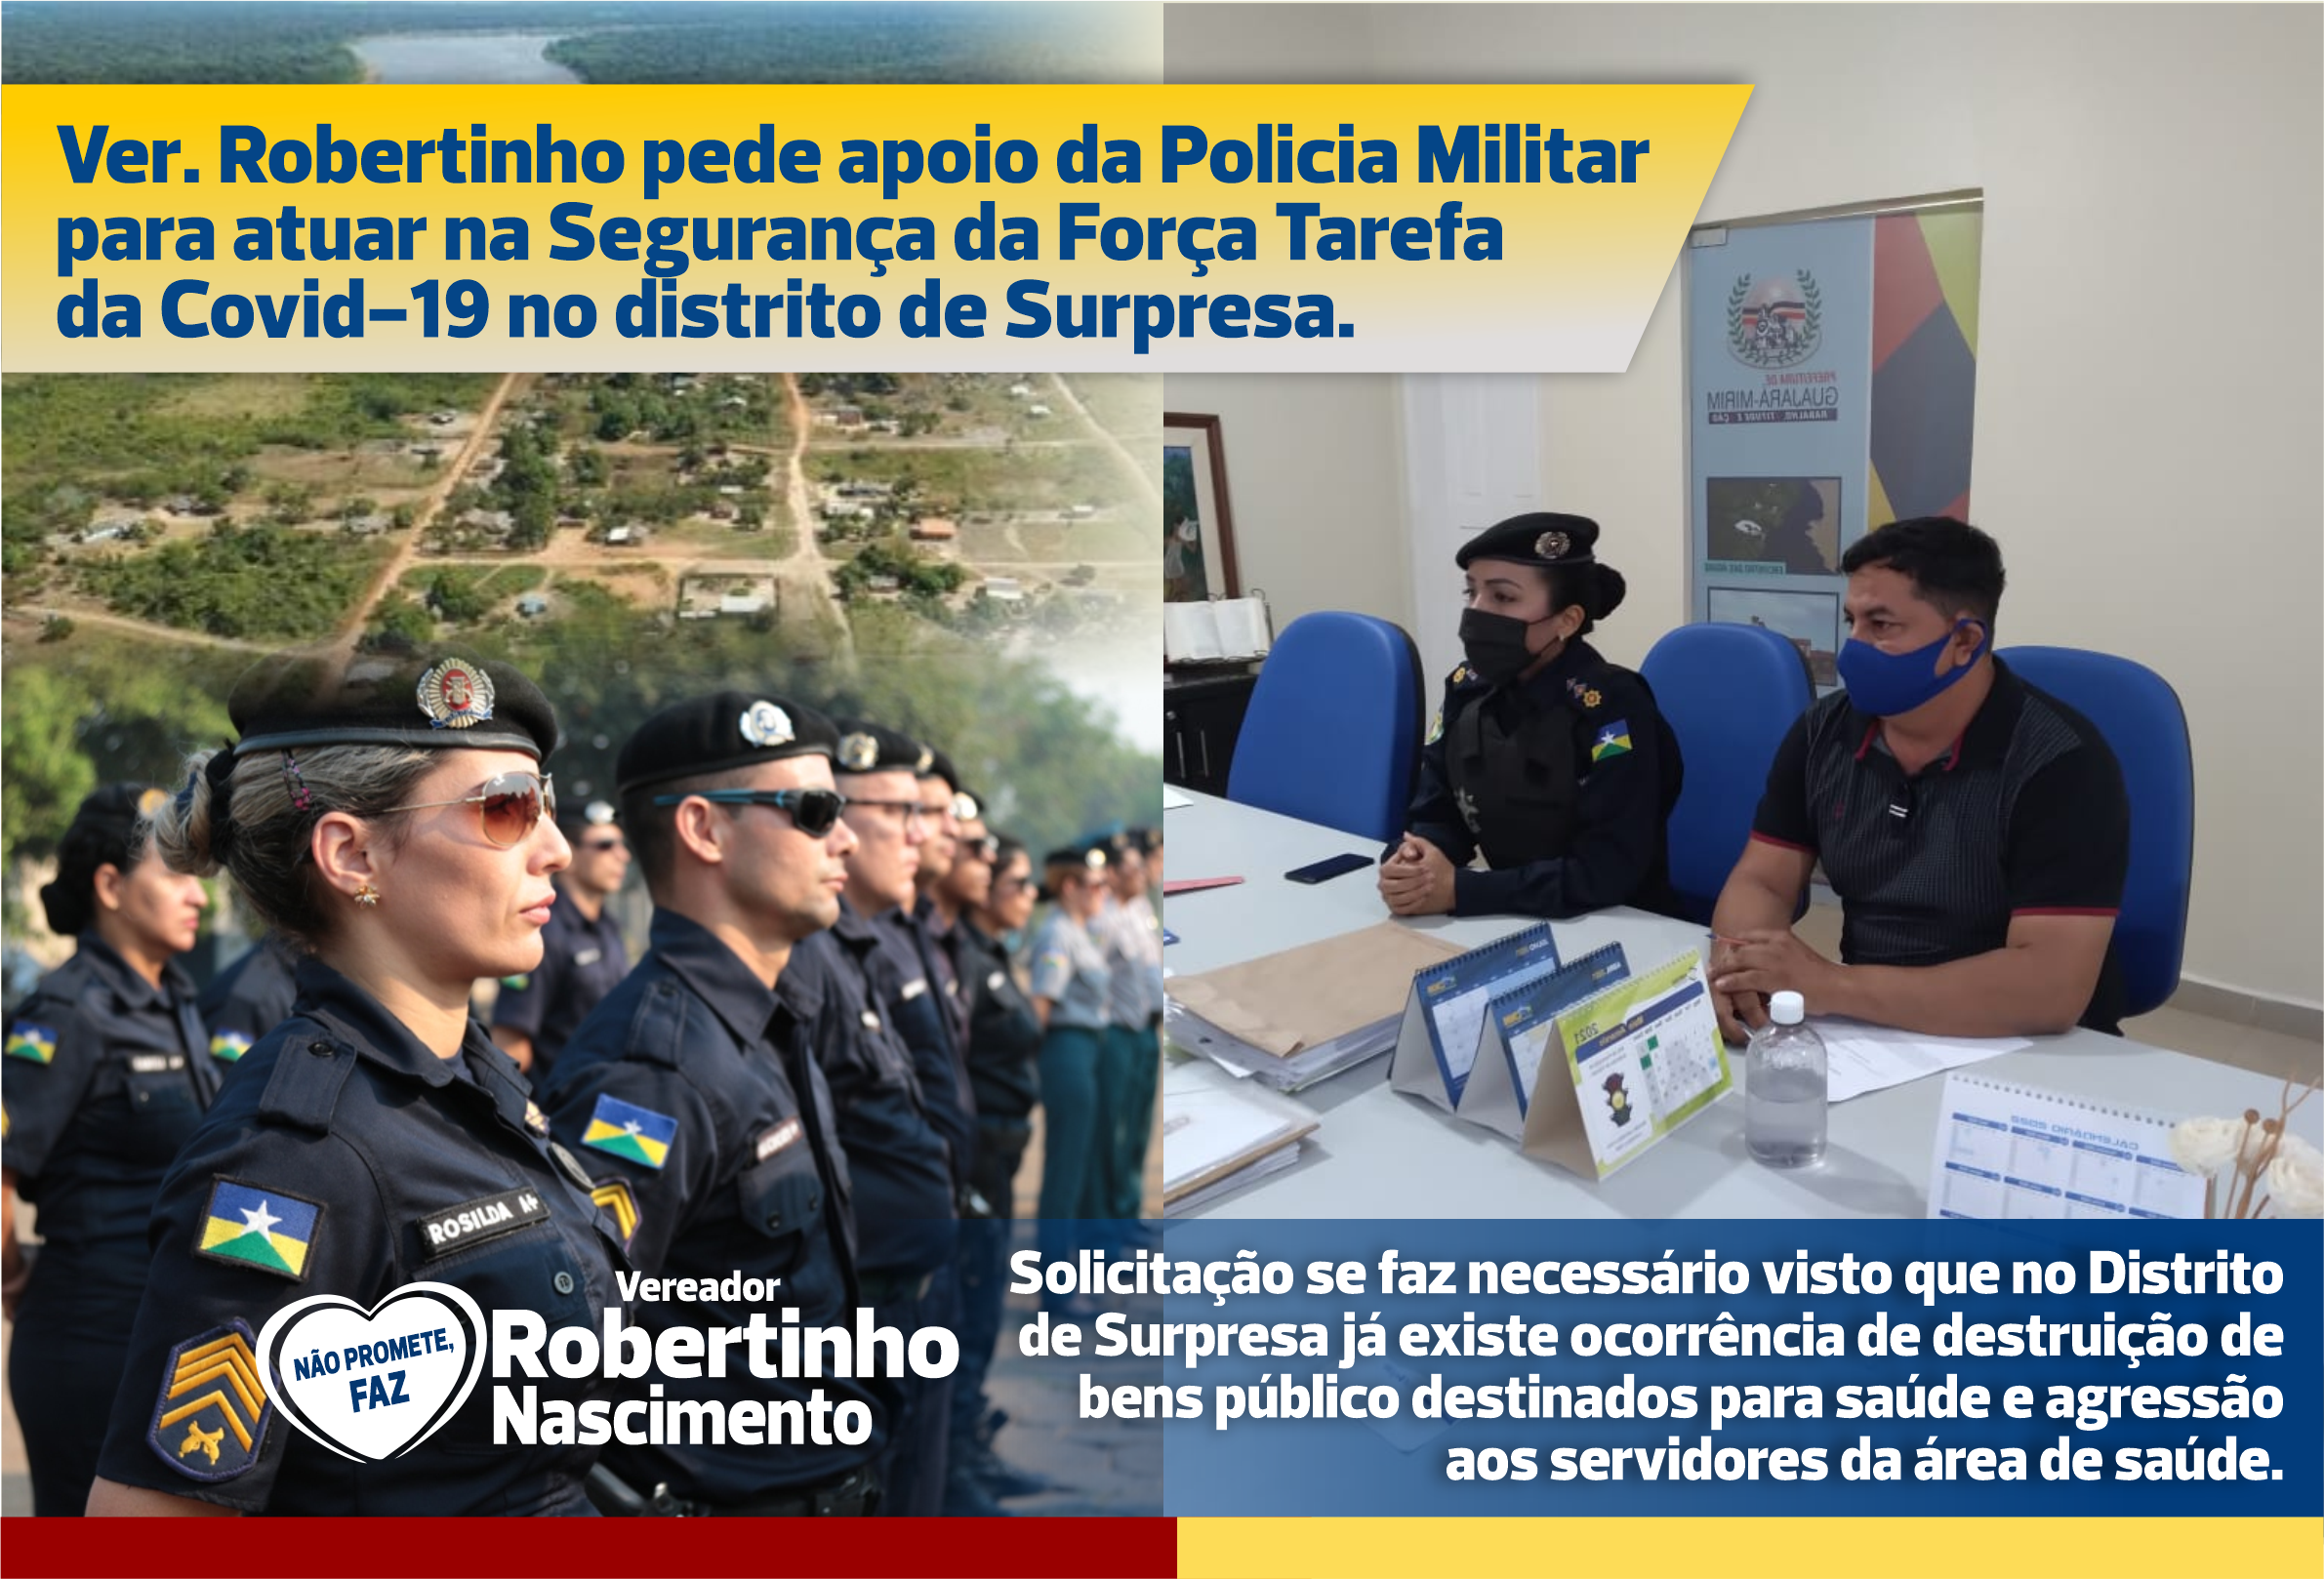 Ver. Robertinho pede apoio da Policia Militar para atuar na Segurança da Força Tarefa da Covid-19 no Distrito de Surpresa.